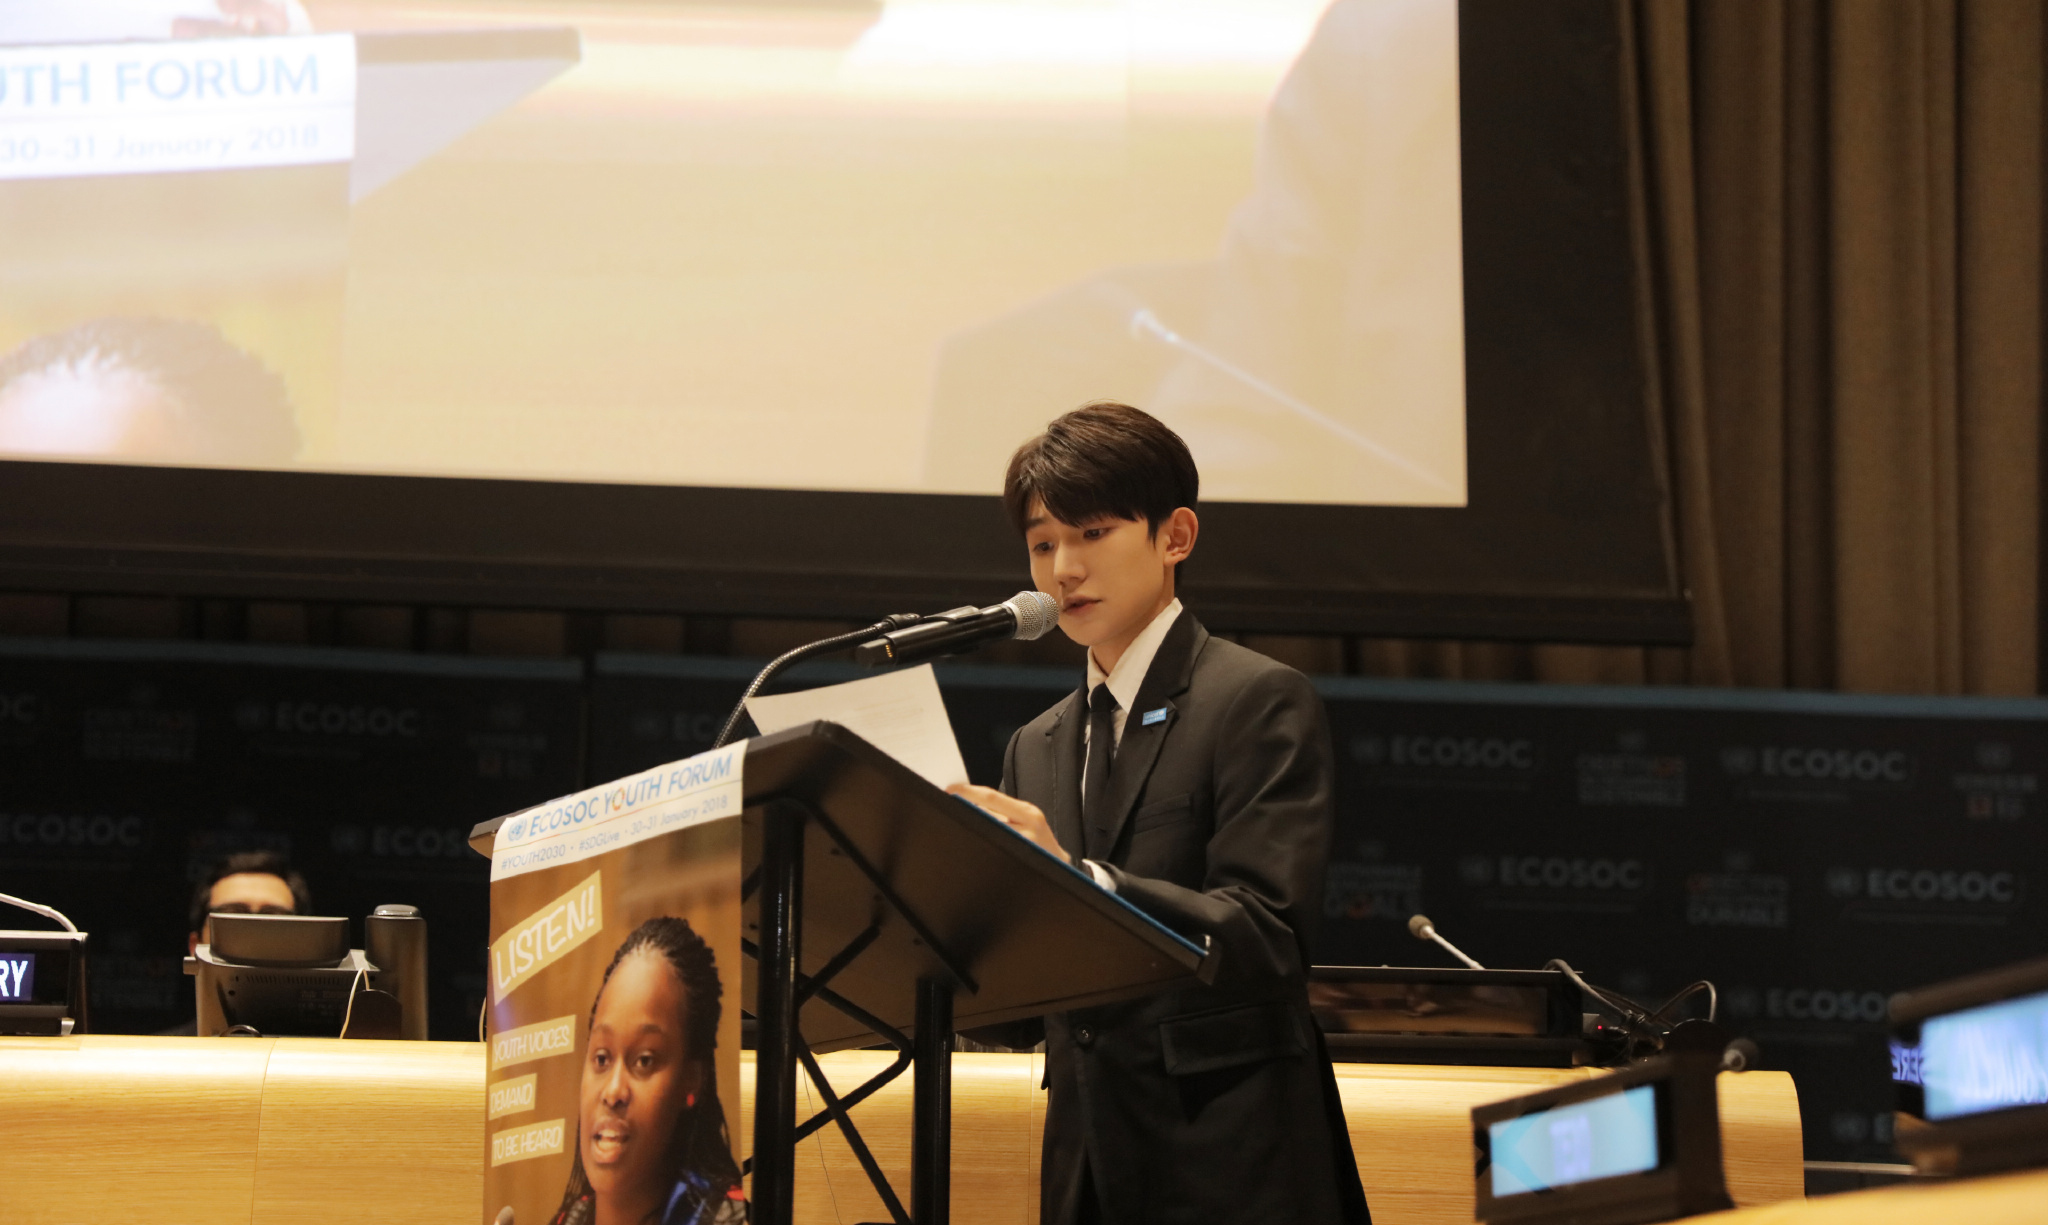 高大上!王源在联合国青年论坛发表全英文演讲